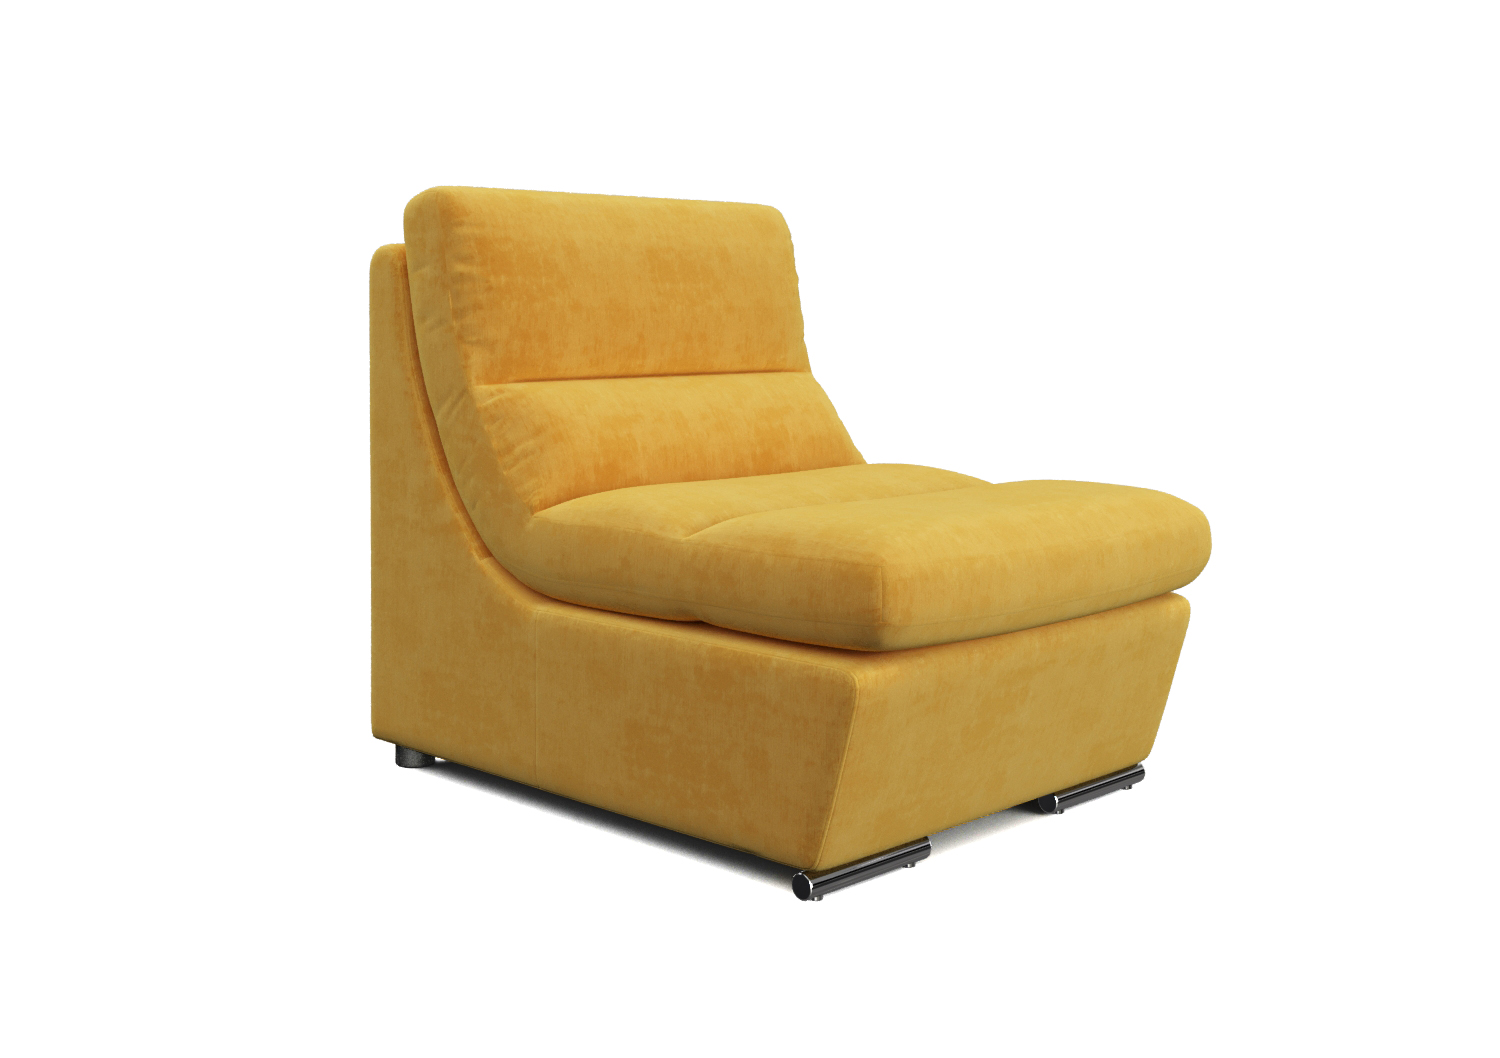 Палермо, кресло, Medok 11 pln ткань Шенилл цвет Желтый механизм трансформации Без механизма